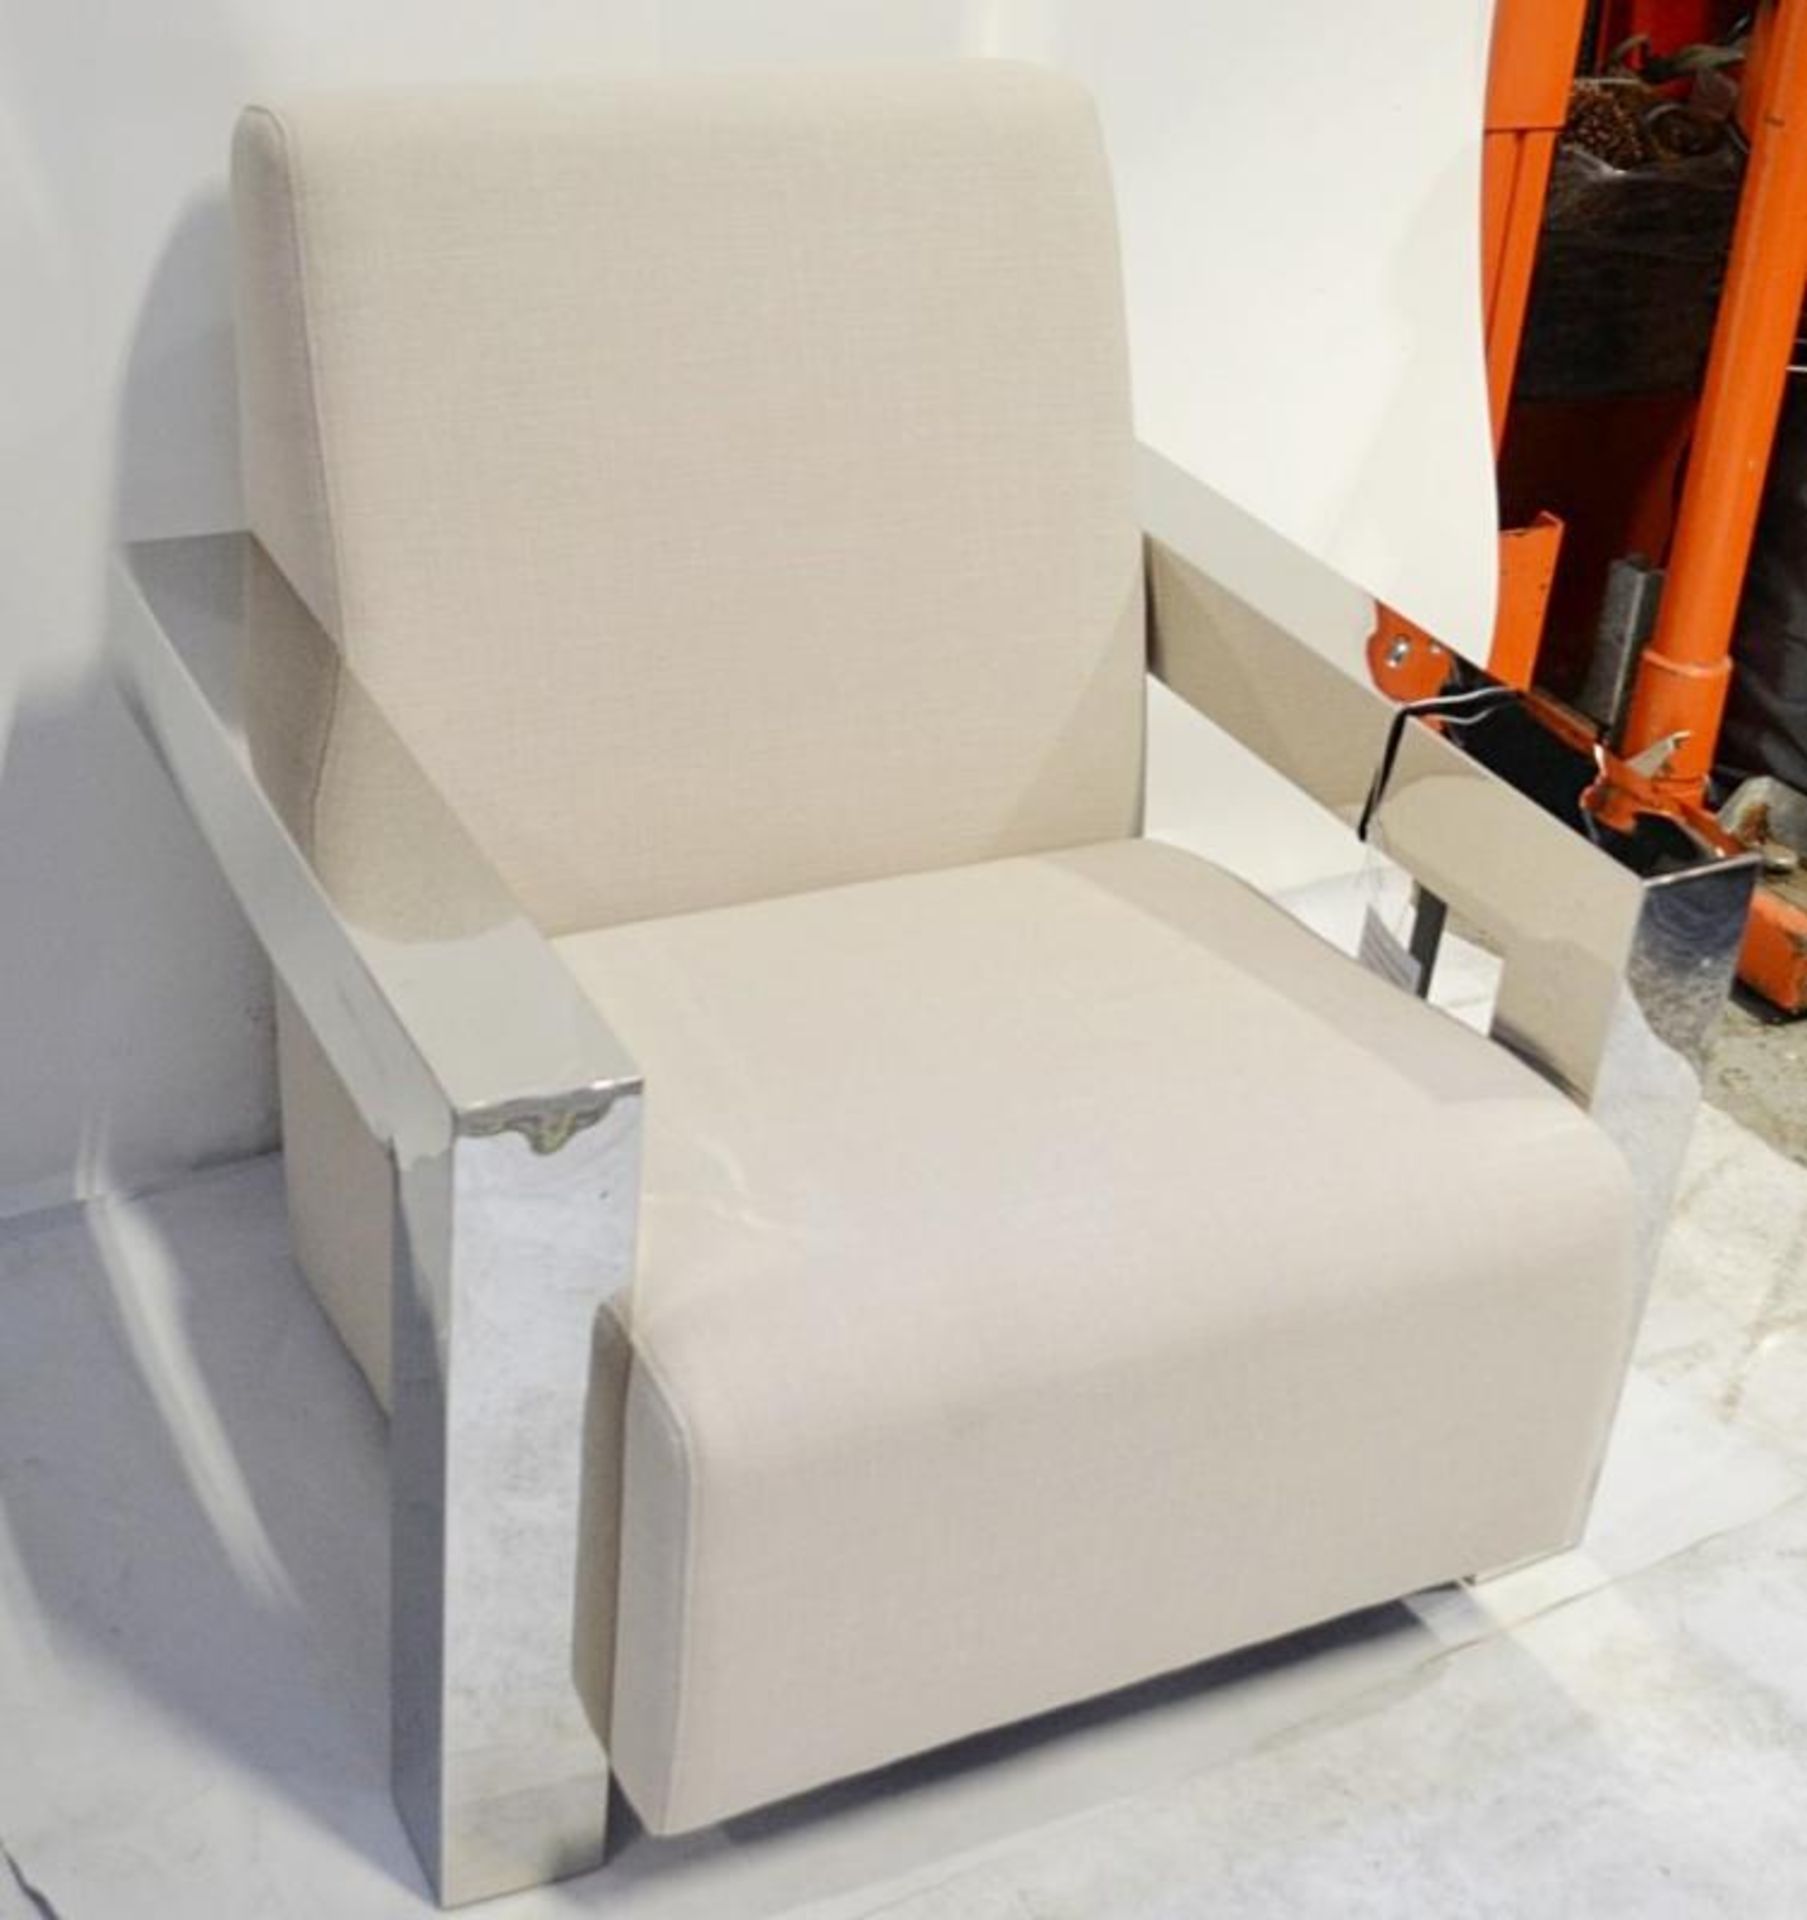 1 x EICHHOLTZ "Franco" Chair - Colour: Panama/Natural - Dimensions: W84cm, D85cm, H85cm, Seat - Image 4 of 10